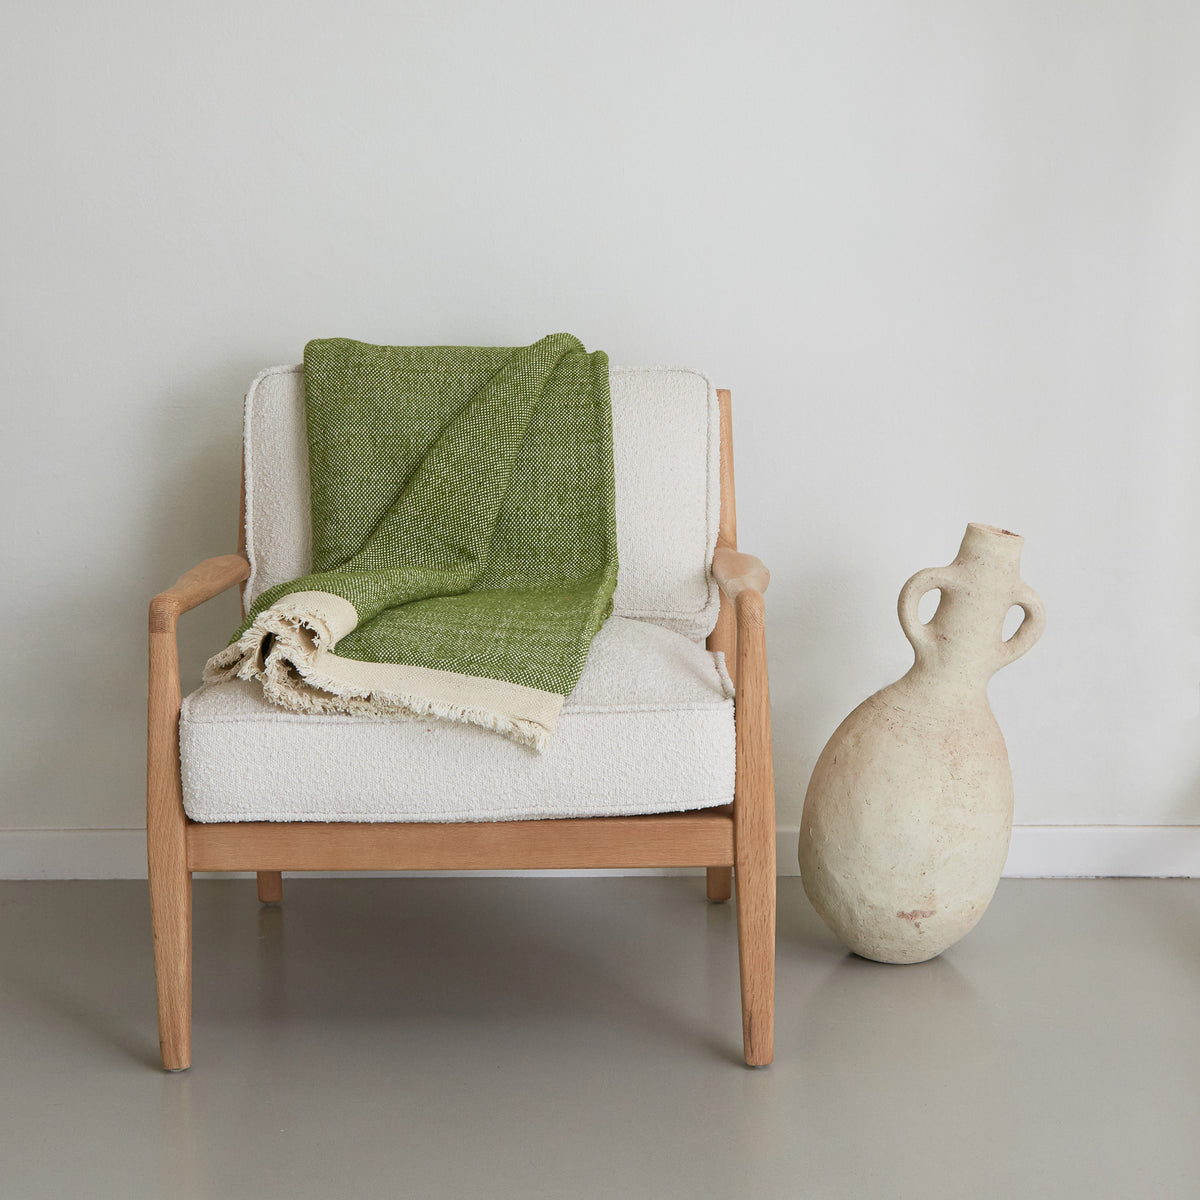 coperta d'arredo realizzata  mano in lana e cotone color verde pappagallo con corta frangia bianca distesa su una sedia